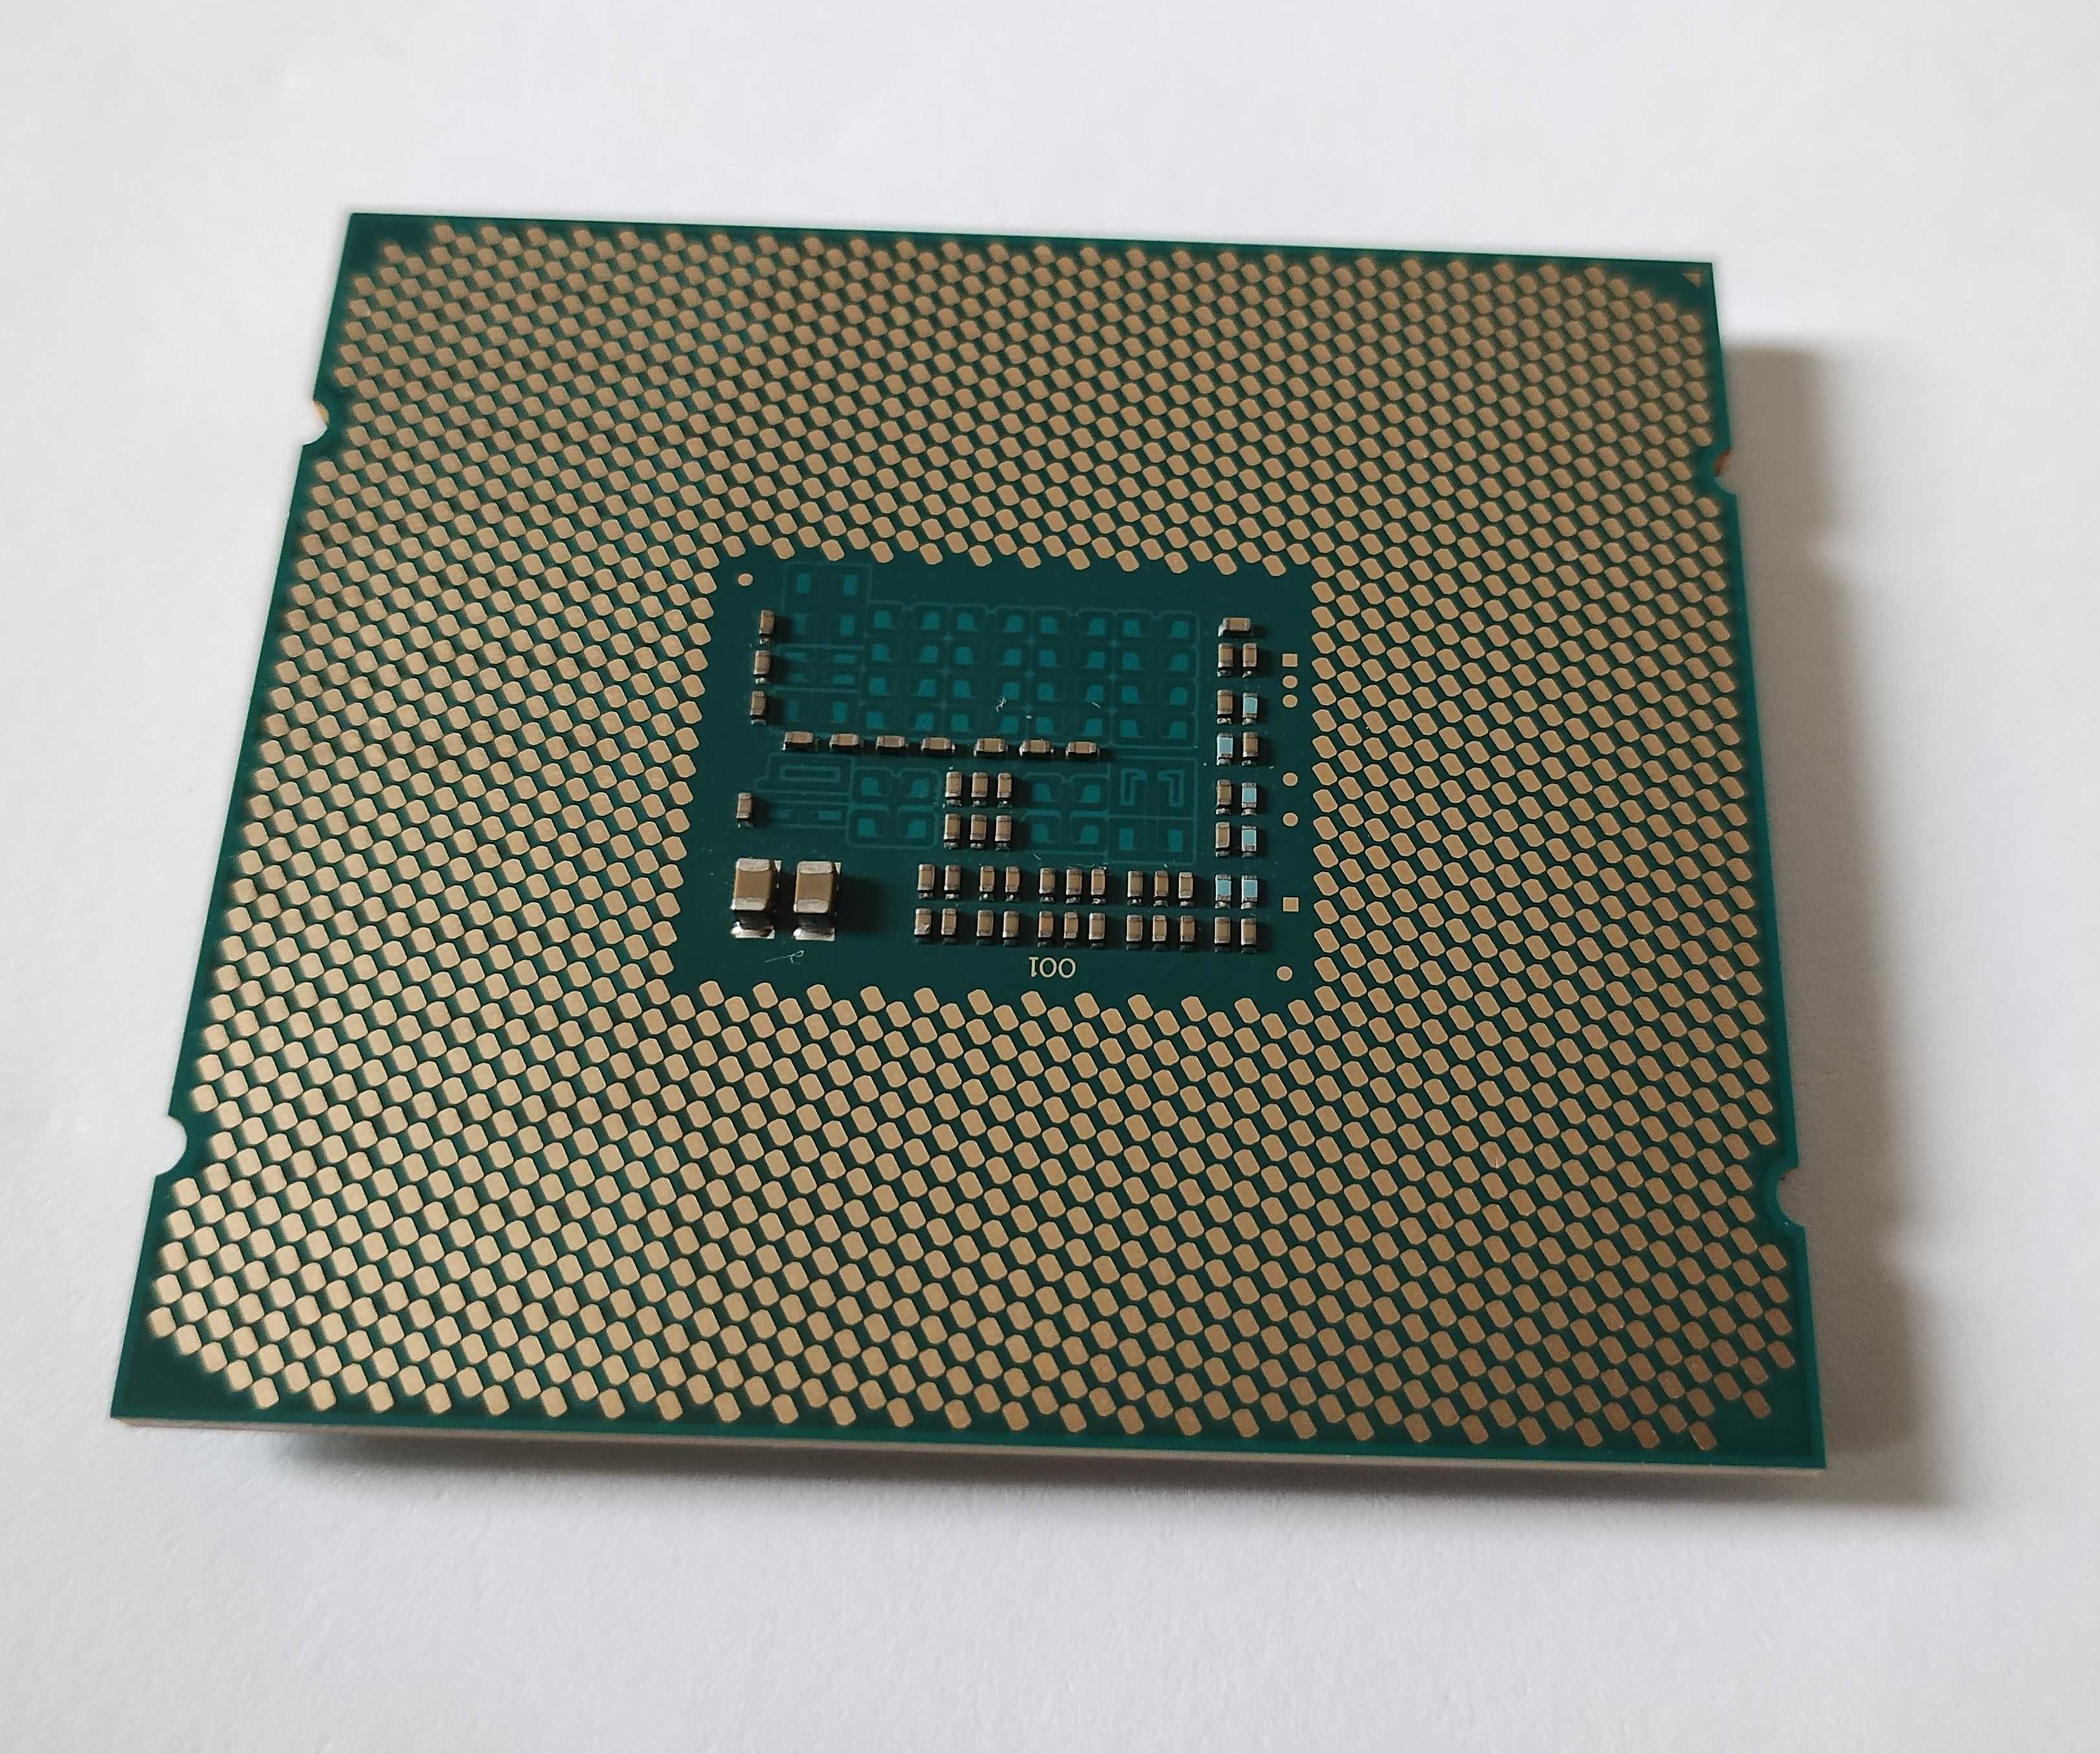 Procesor Intel Xeon E5-2620 V3 2.40Ghz Hexa Core LGA2011-3 85W